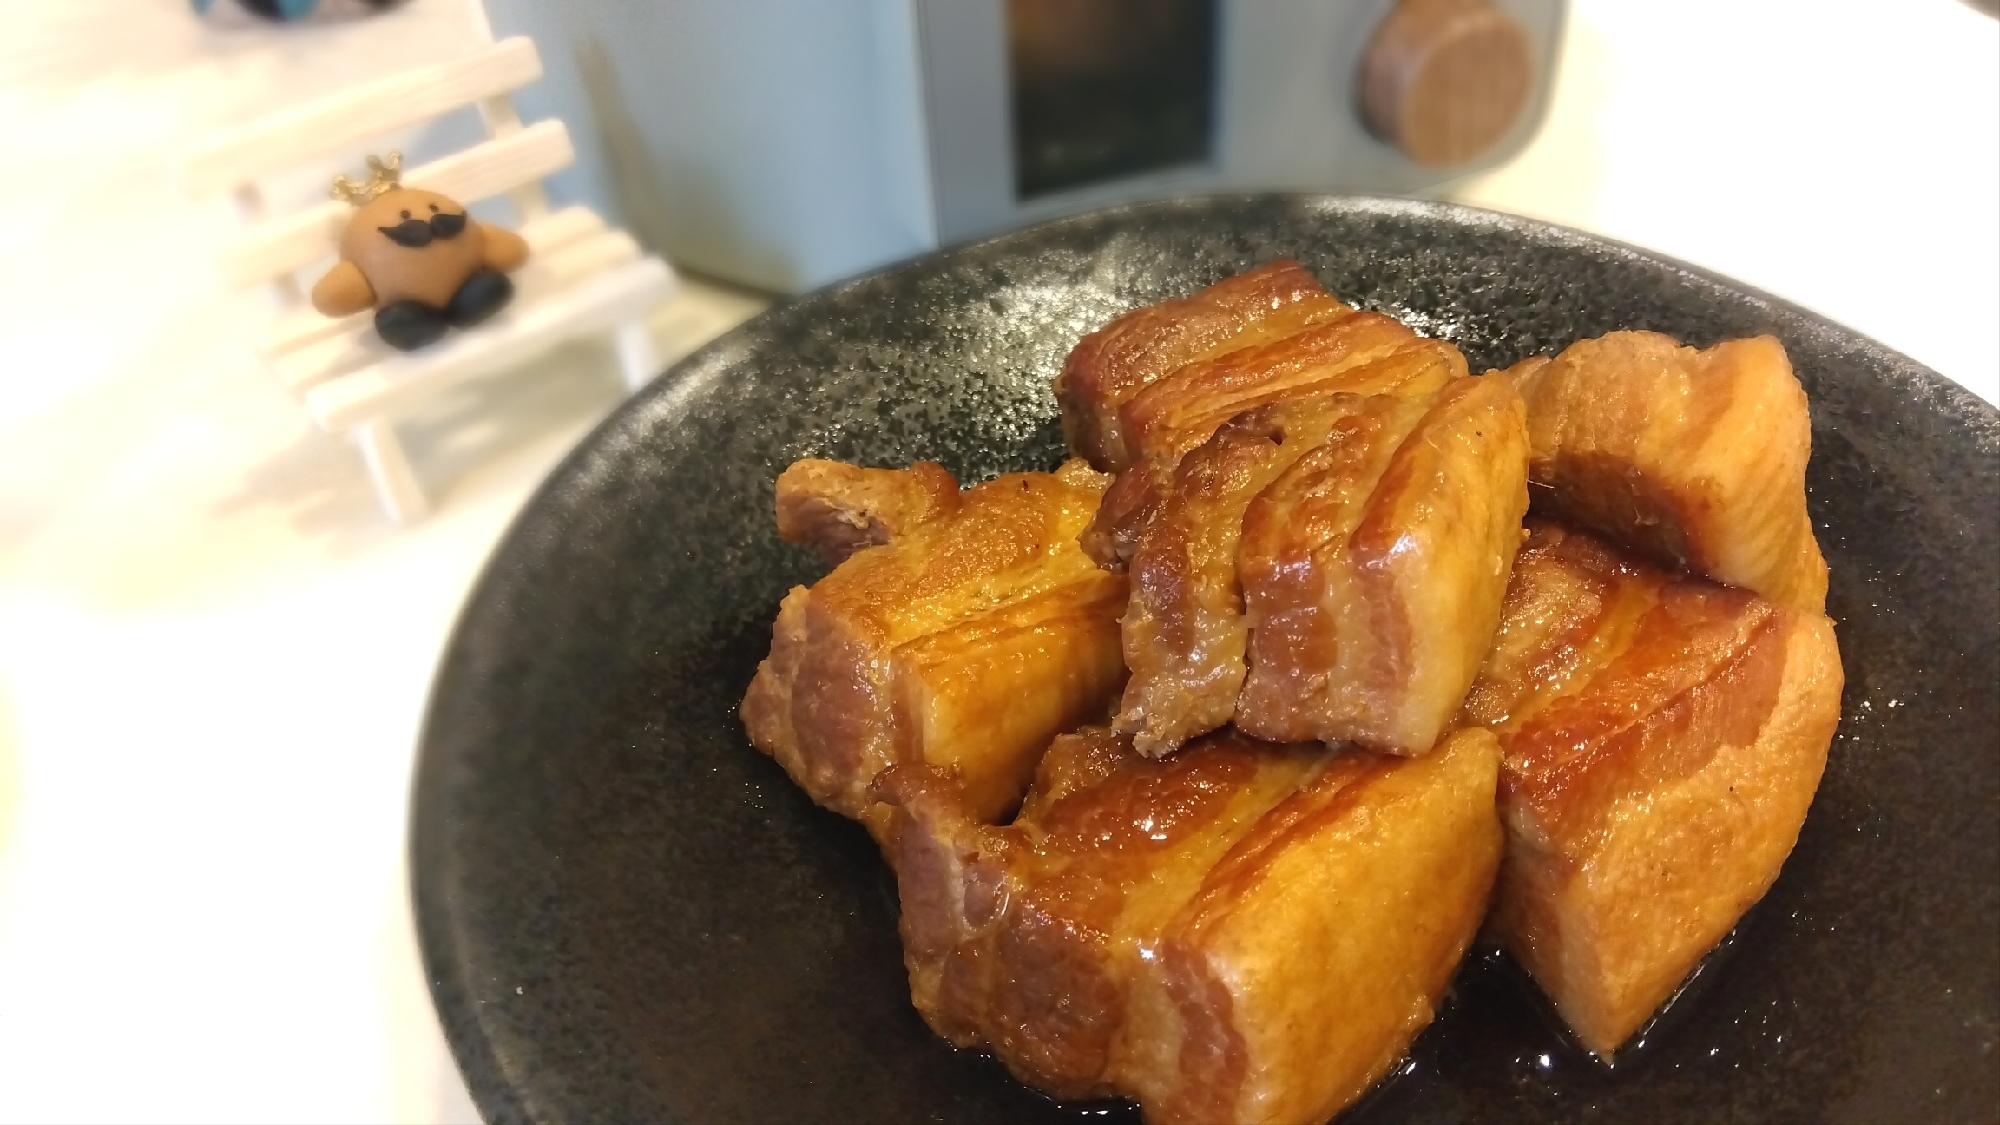 電気圧力鍋でおいしい豚の角煮**臭みなく作るレシピ